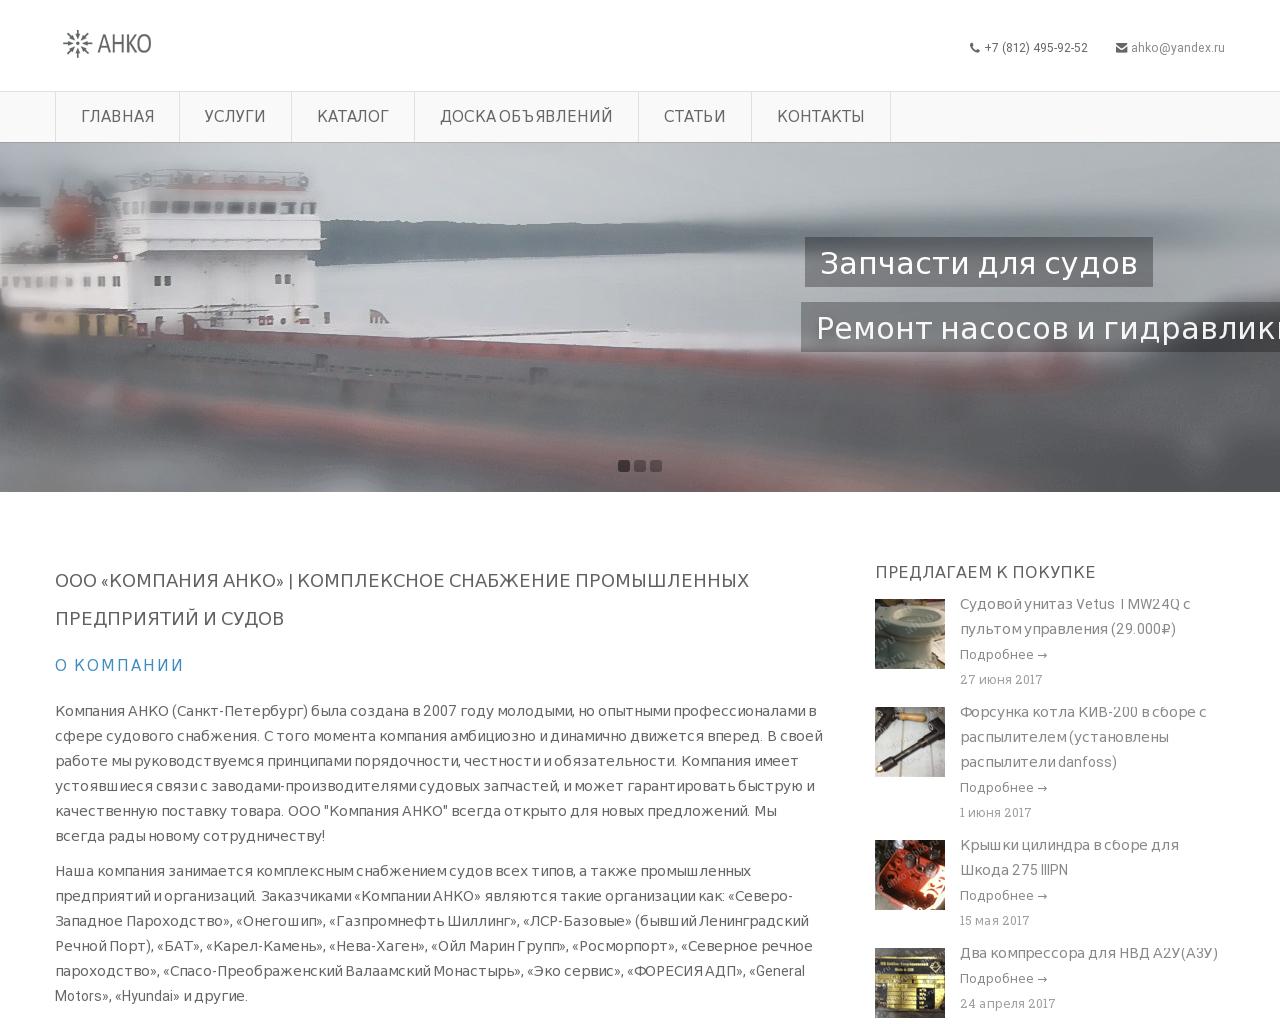 Изображение сайта ahko.ru в разрешении 1280x1024